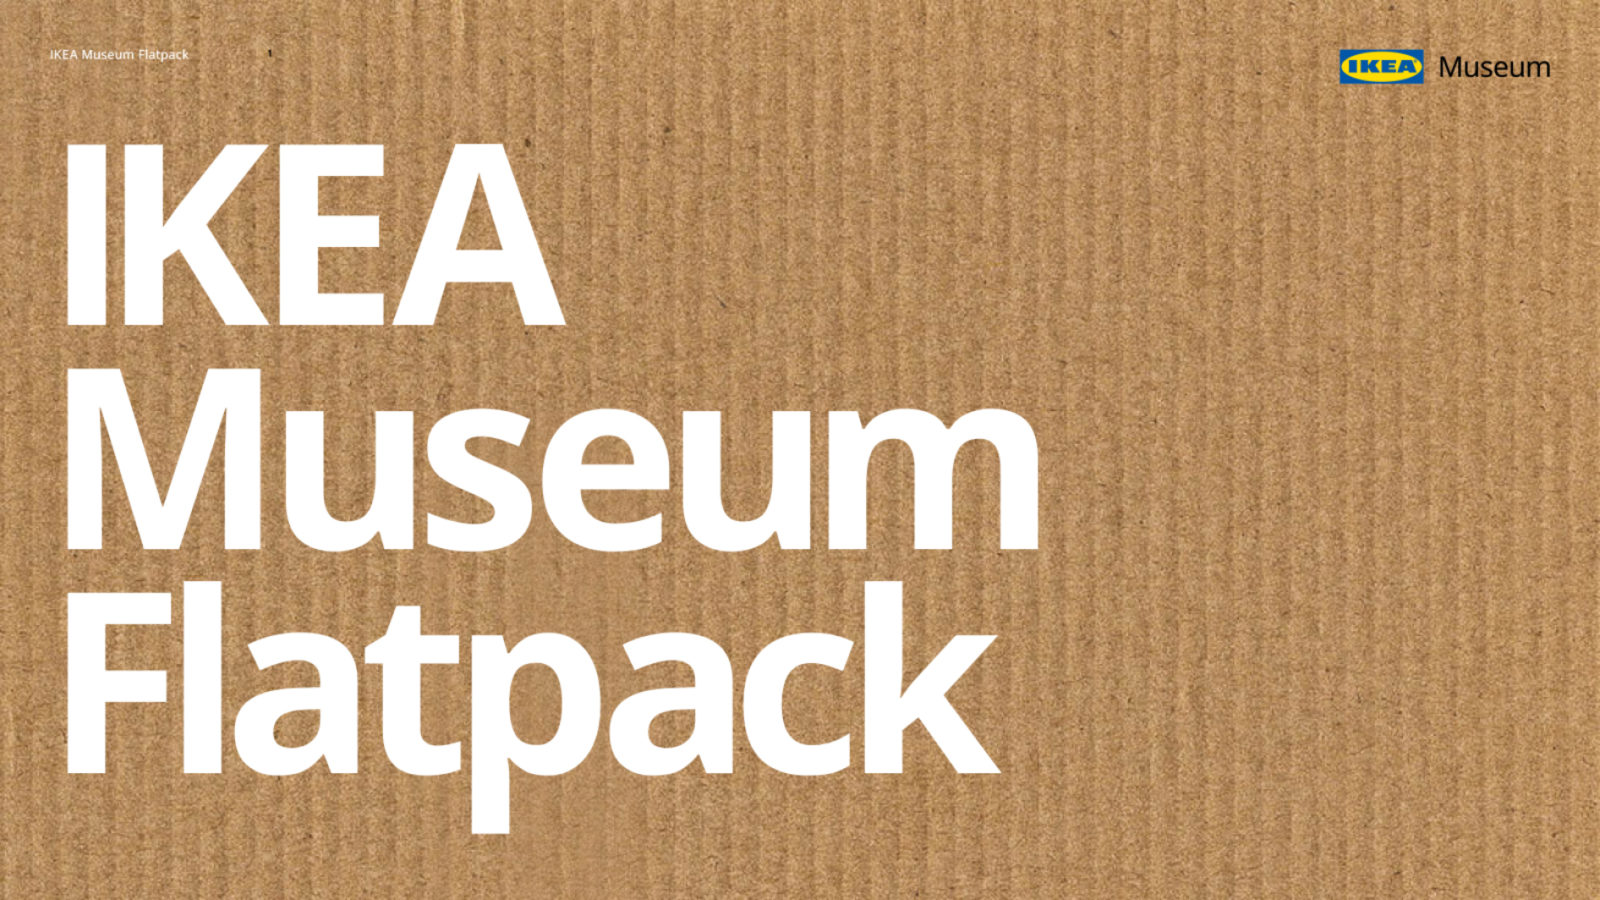 En rektangulär, brun kartongbit med IKEA Museum logo och texten ”IKEA Museum Flatpack” skriven i vitt.